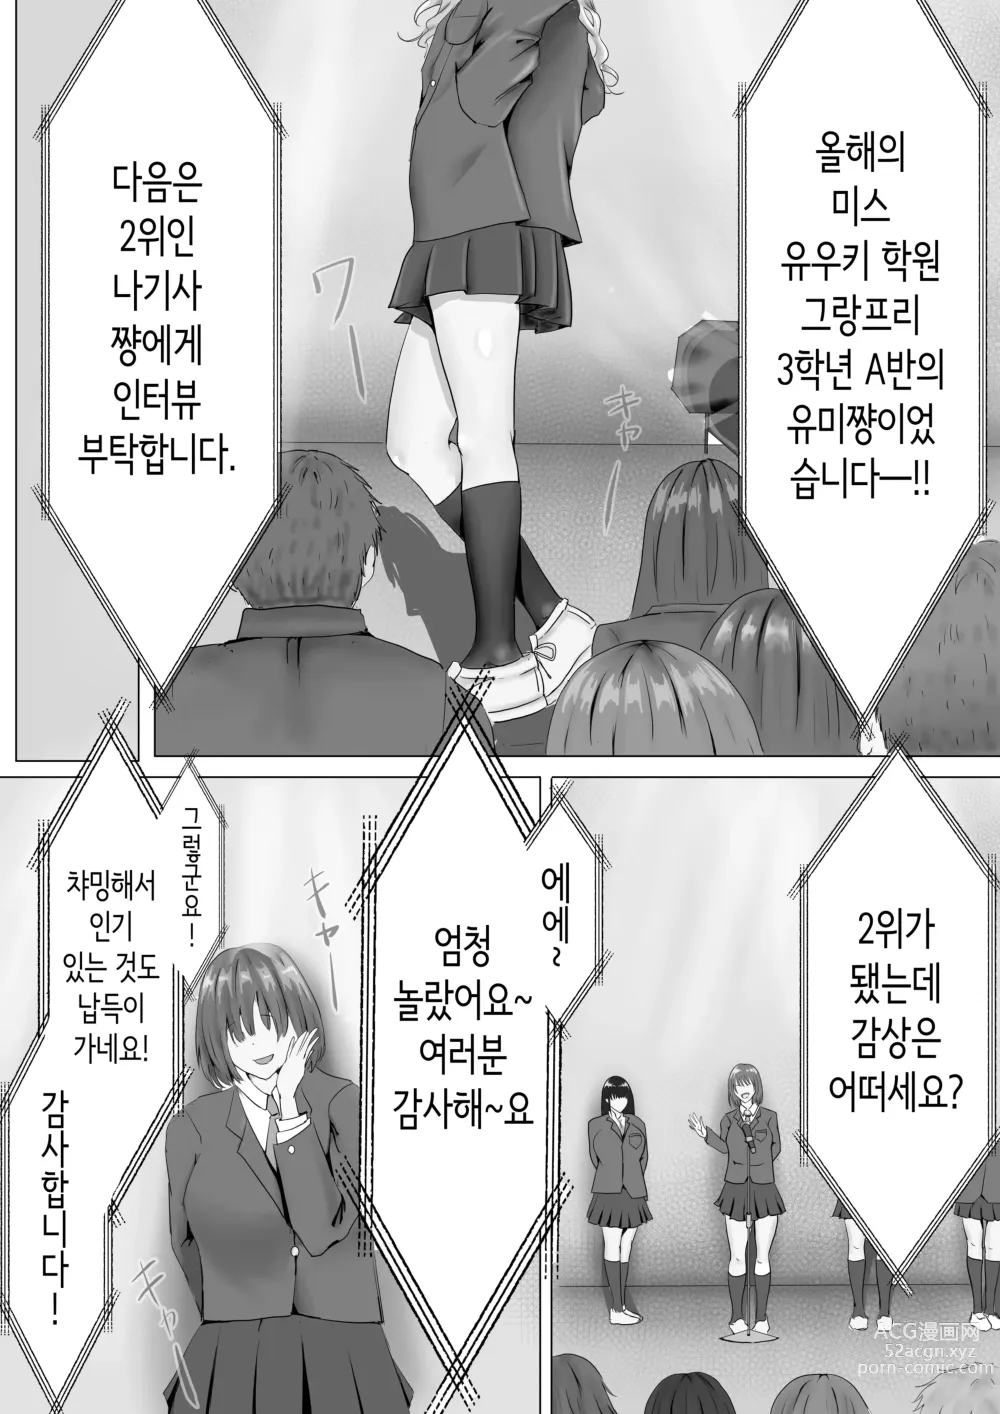 Page 2 of doujinshi 과묵하고 긴 흑발의 거유 풍기위원장을 미친듯이 따먹고 싶다